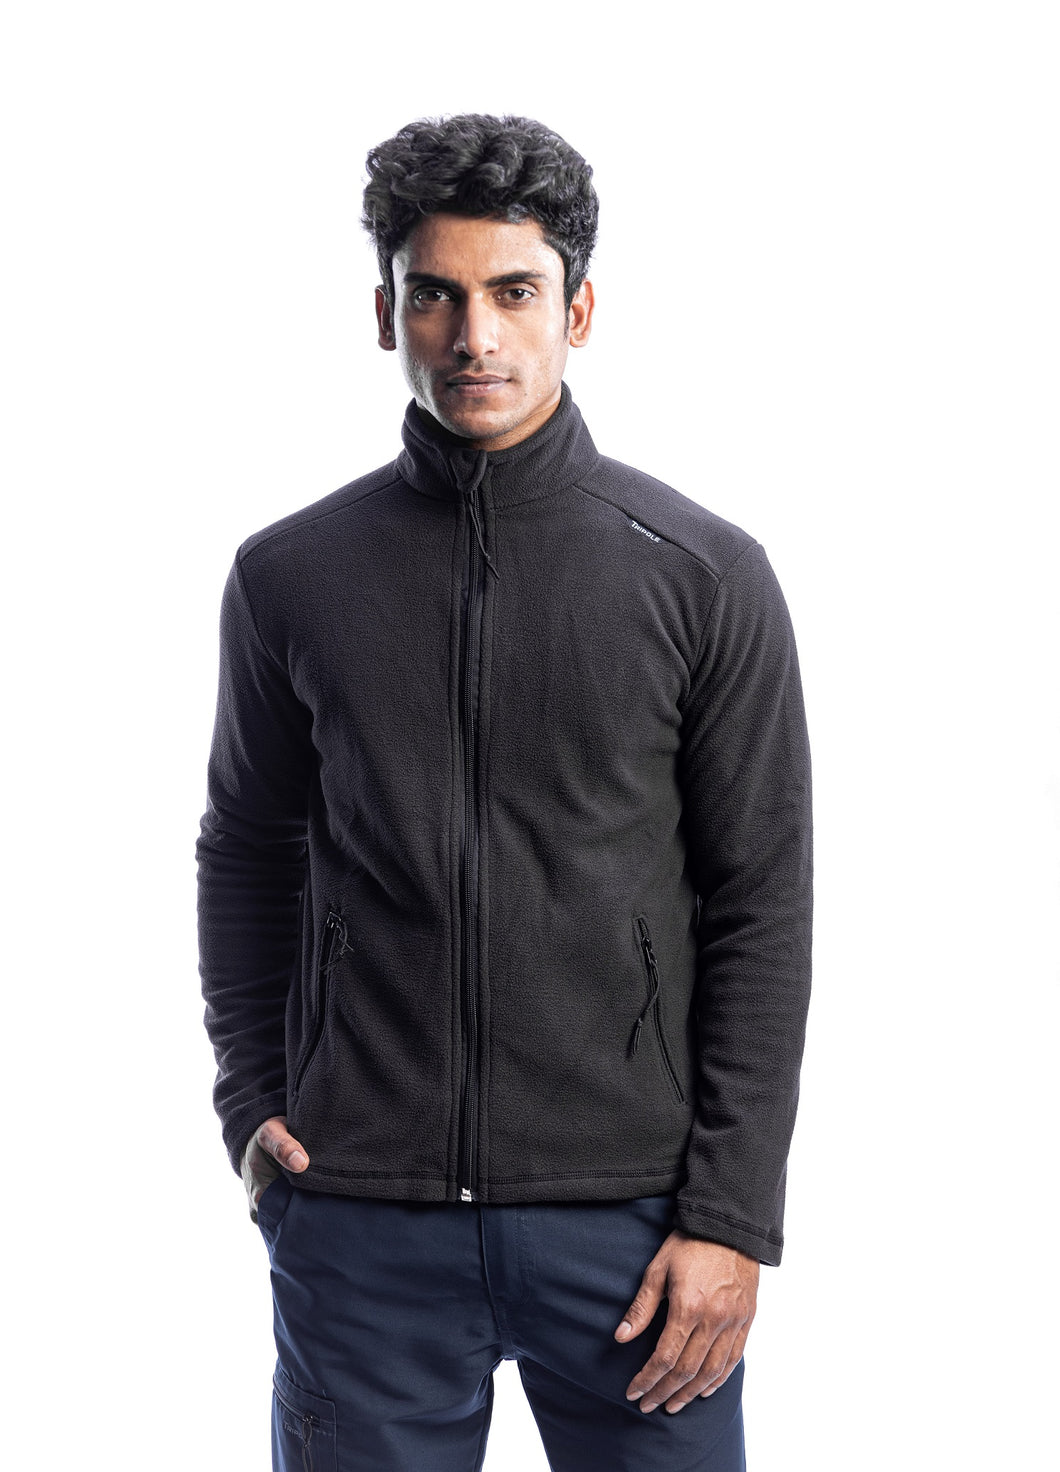 Tripole Anti-Pilling Fleece Winter Jacket Full Zip | Black